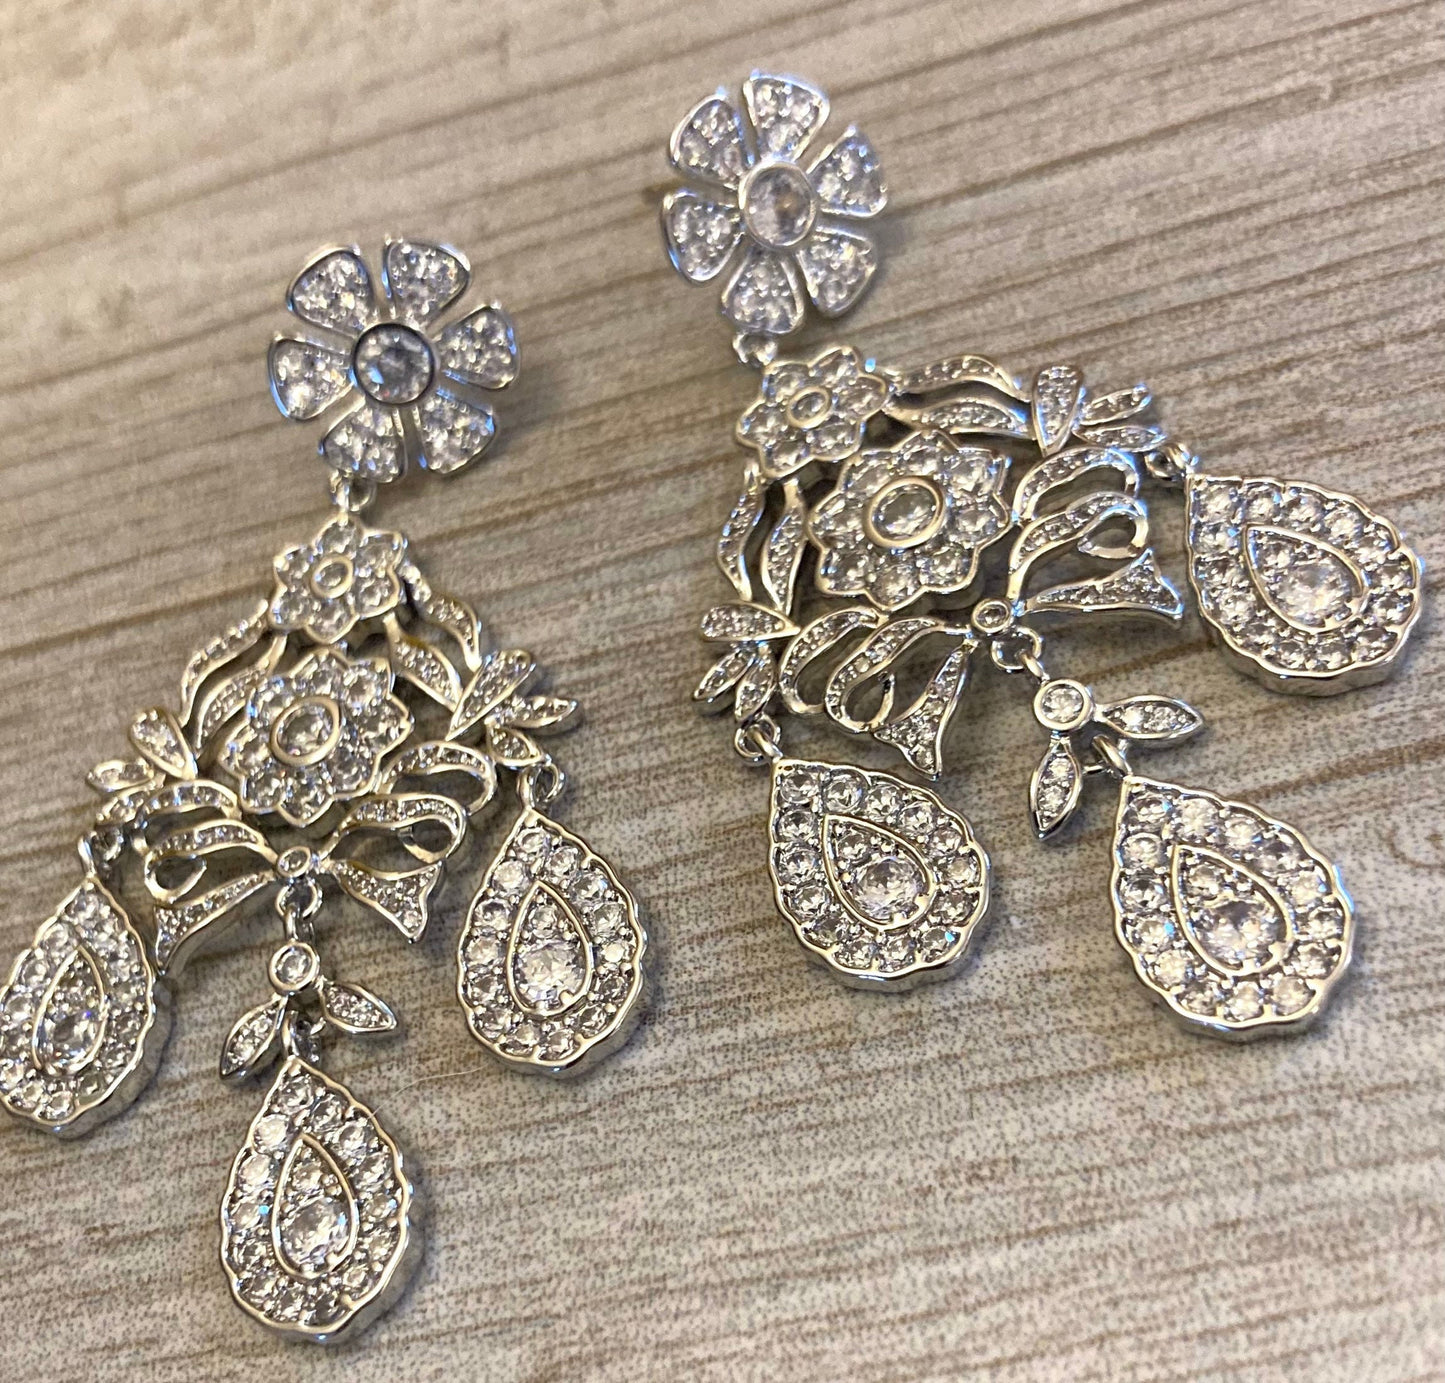 Girandole Earrings Rhinestone Chandelier Earrings in Gold or Silver historic jewelry replica earrings 18th century Georgian Victorian